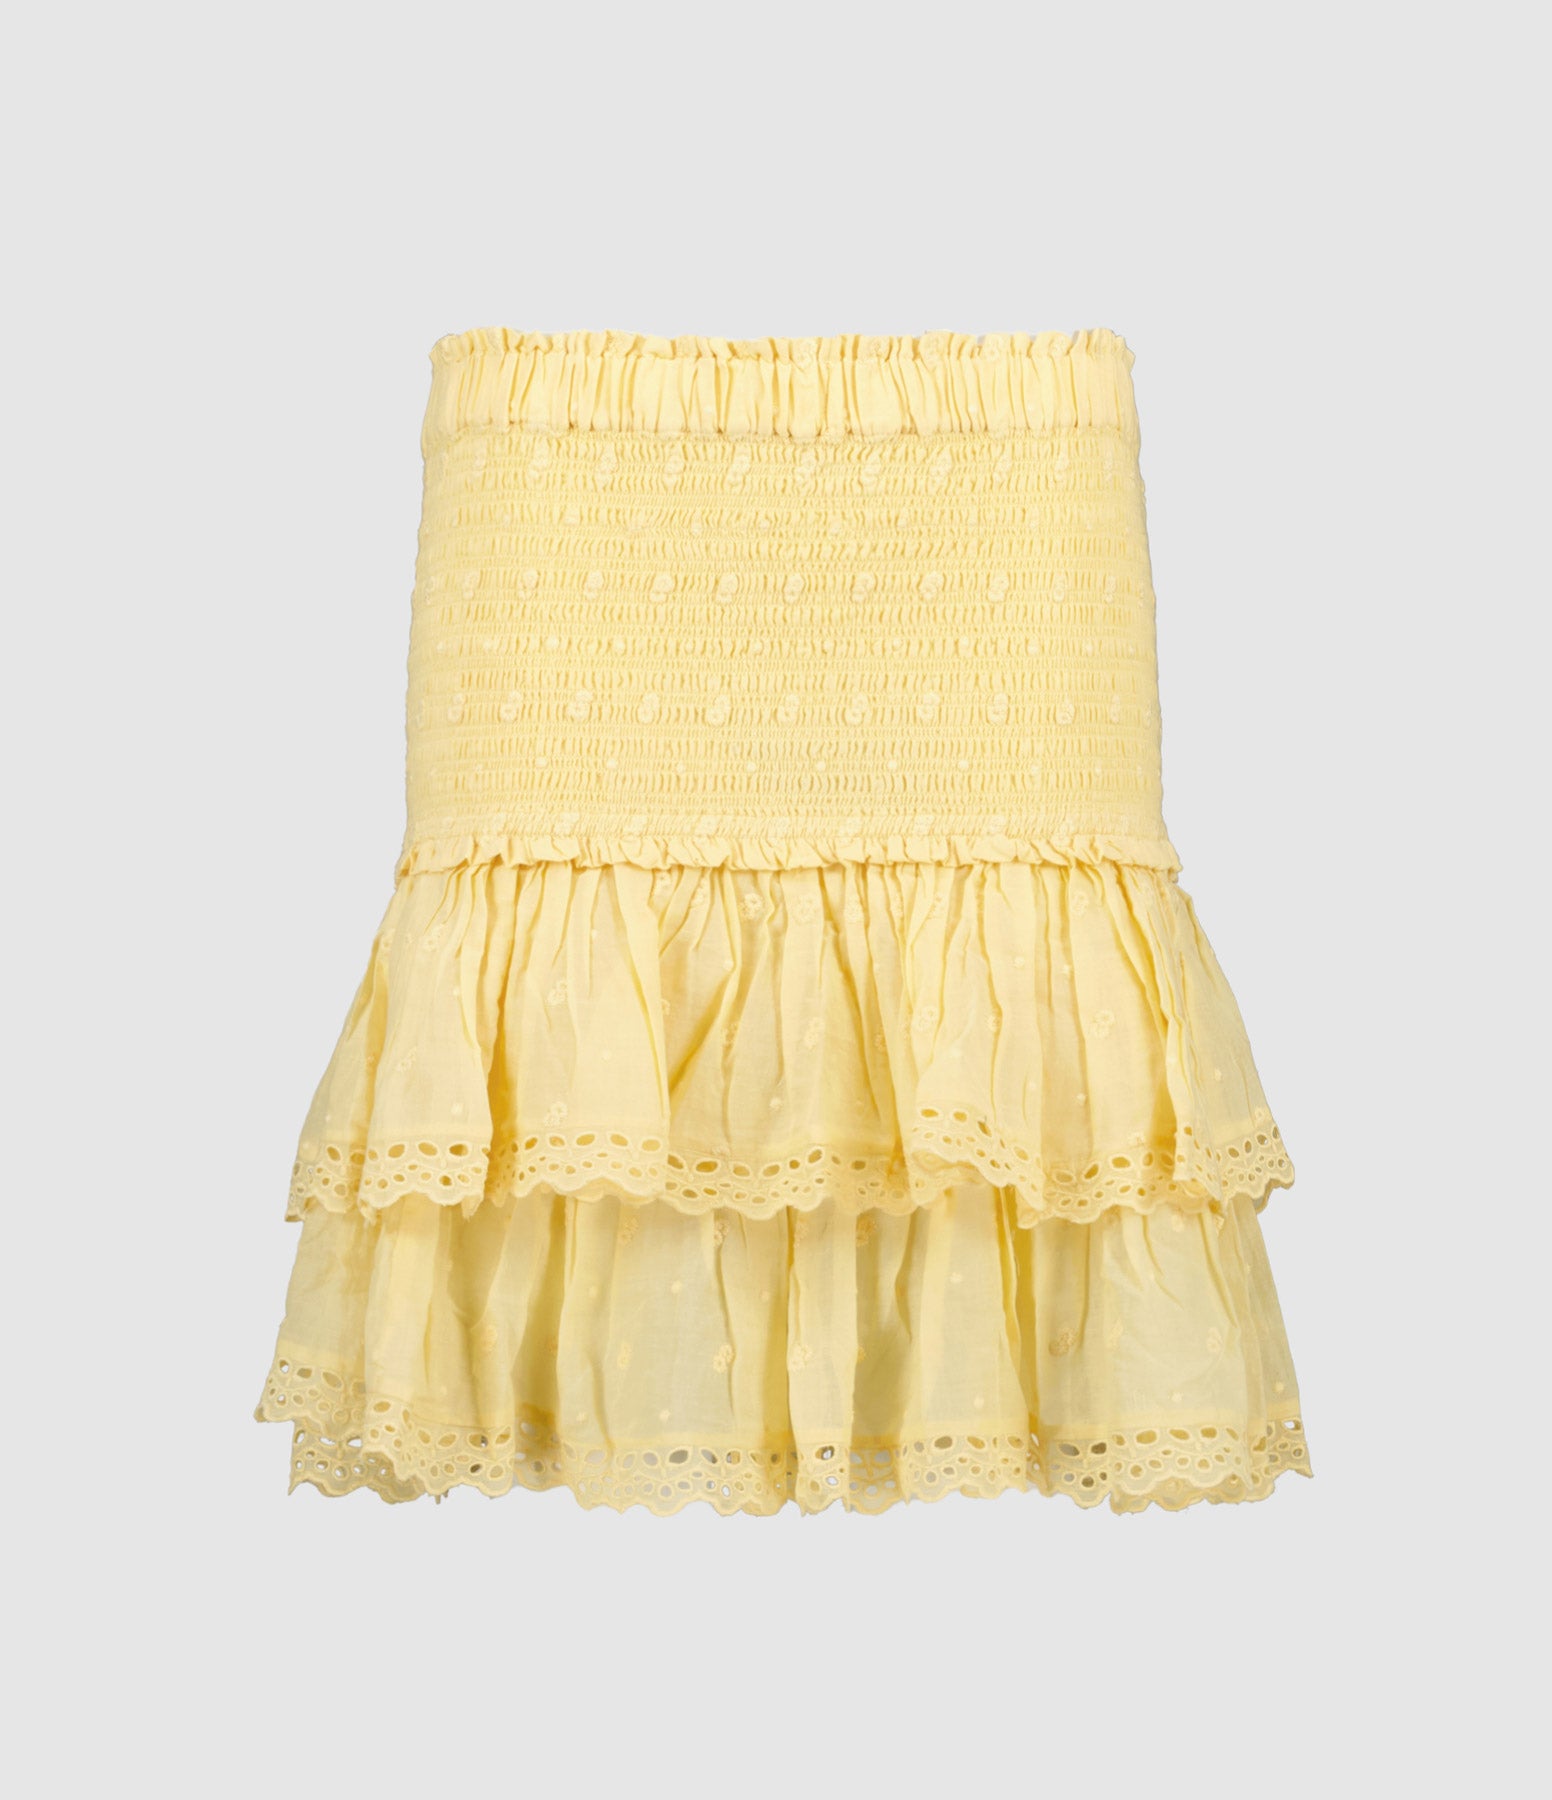 Tinaomi skirt, sunlight